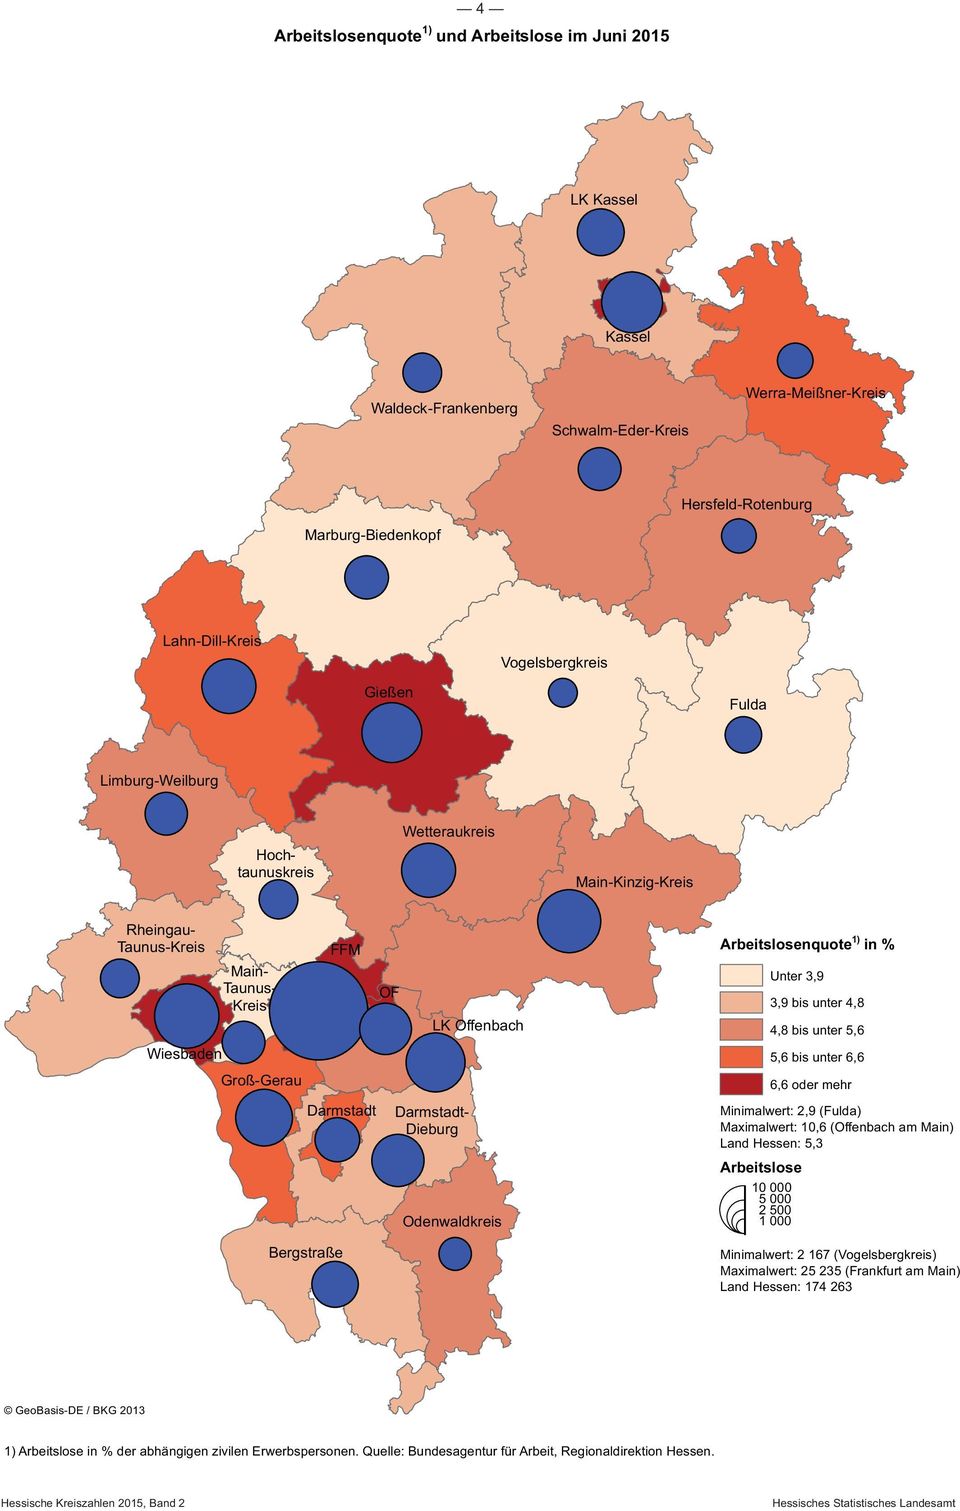 Offenbach Odenwaldkreis Arbeitslosenquote 1) in % Unter 3,9 Minimalwert: 2,9 (Fulda) Maximalwert: 10,6 (Offenbach am Main) Land Hessen: 5,3 Arbeitslose 10 000 5 000 2 500 1 000 3,9 bis unter 4,8 4,8